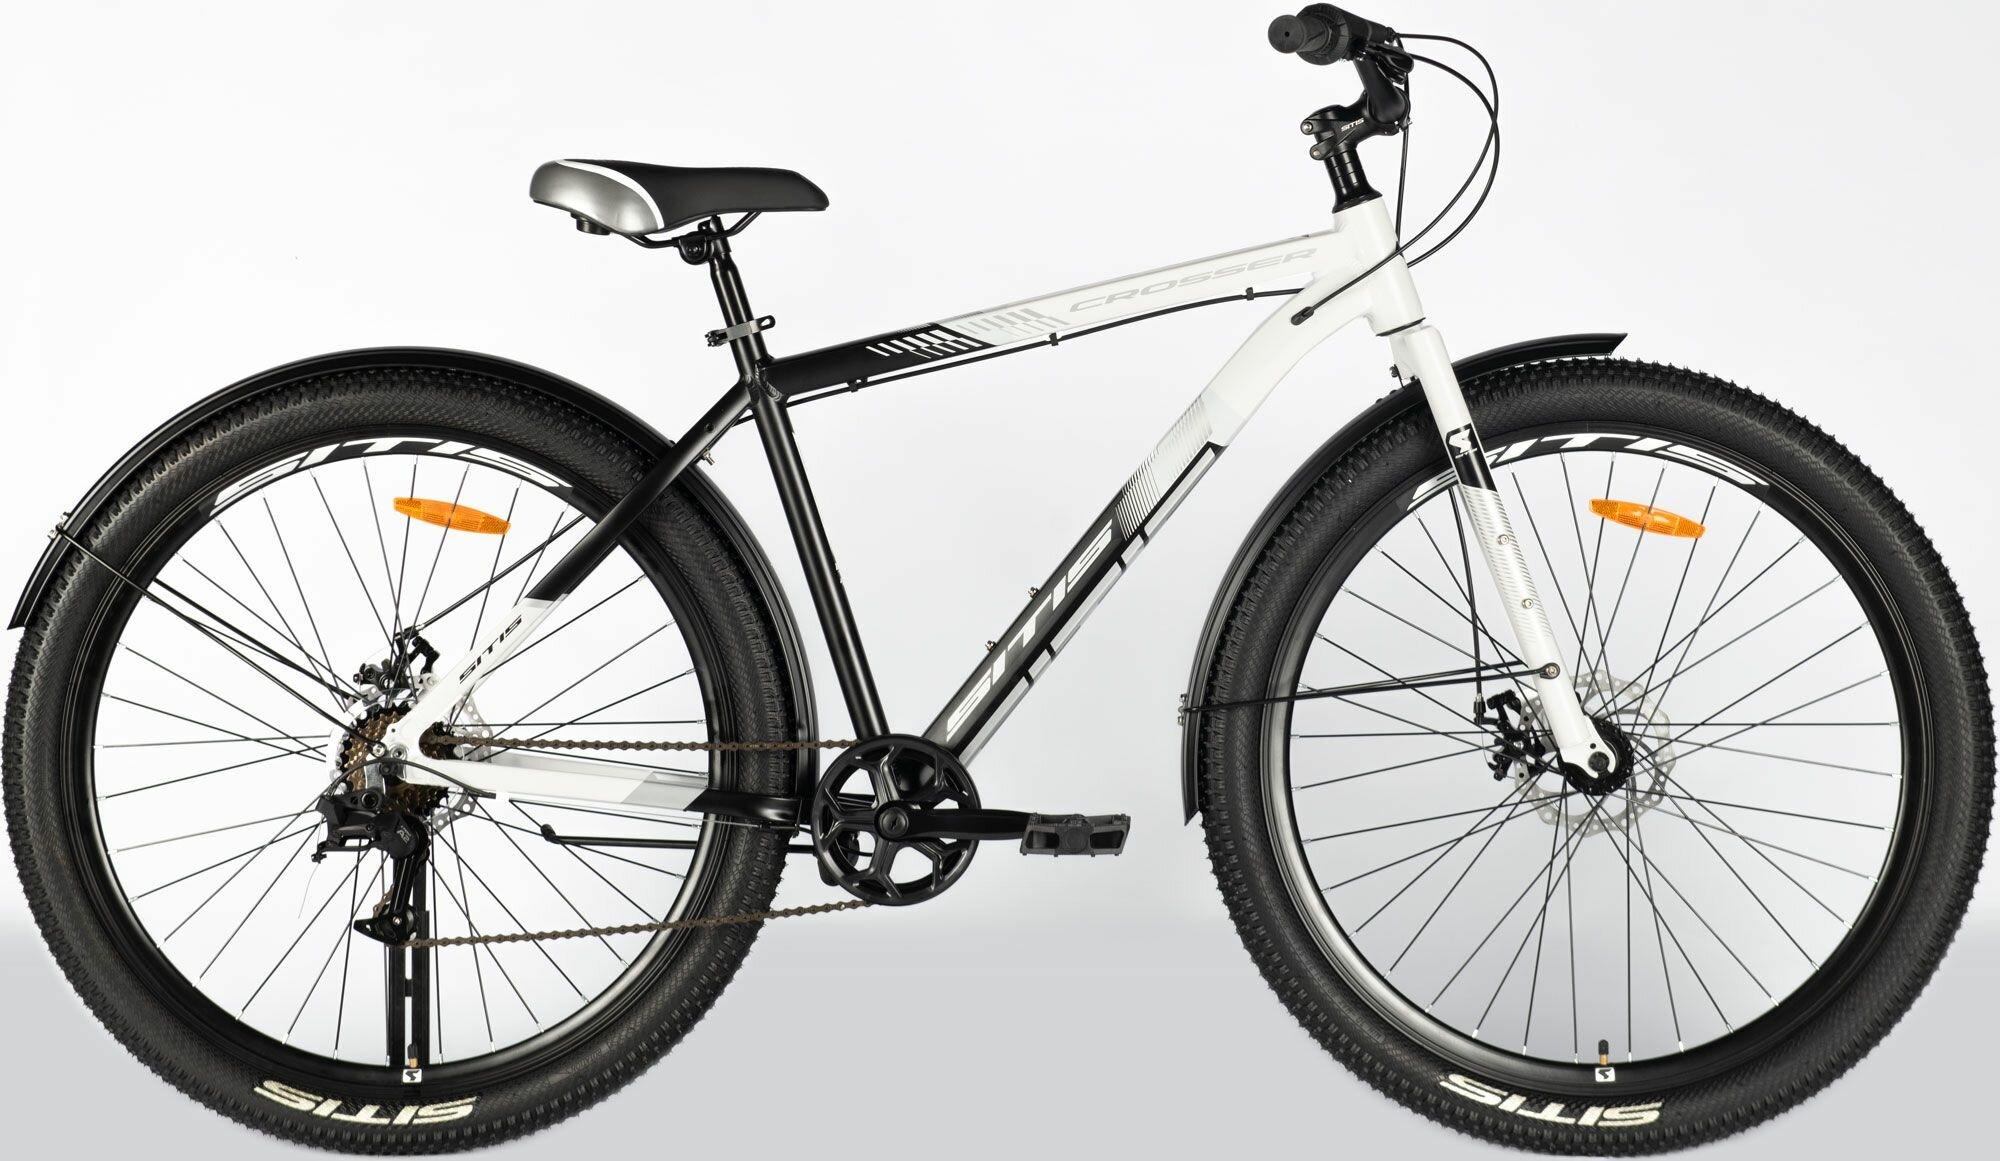 Велосипед городской SITIS CROSSER Rigid SCR29MD 29" (2024), хардтейл, ригид, взрослый, мужской, алюминиевая рама, 7 скоростей, дисковые механические тормоза, цвет White-Black-Grey, белый/черный/серый цвет, размер рамы 21", для роста 185-195 см